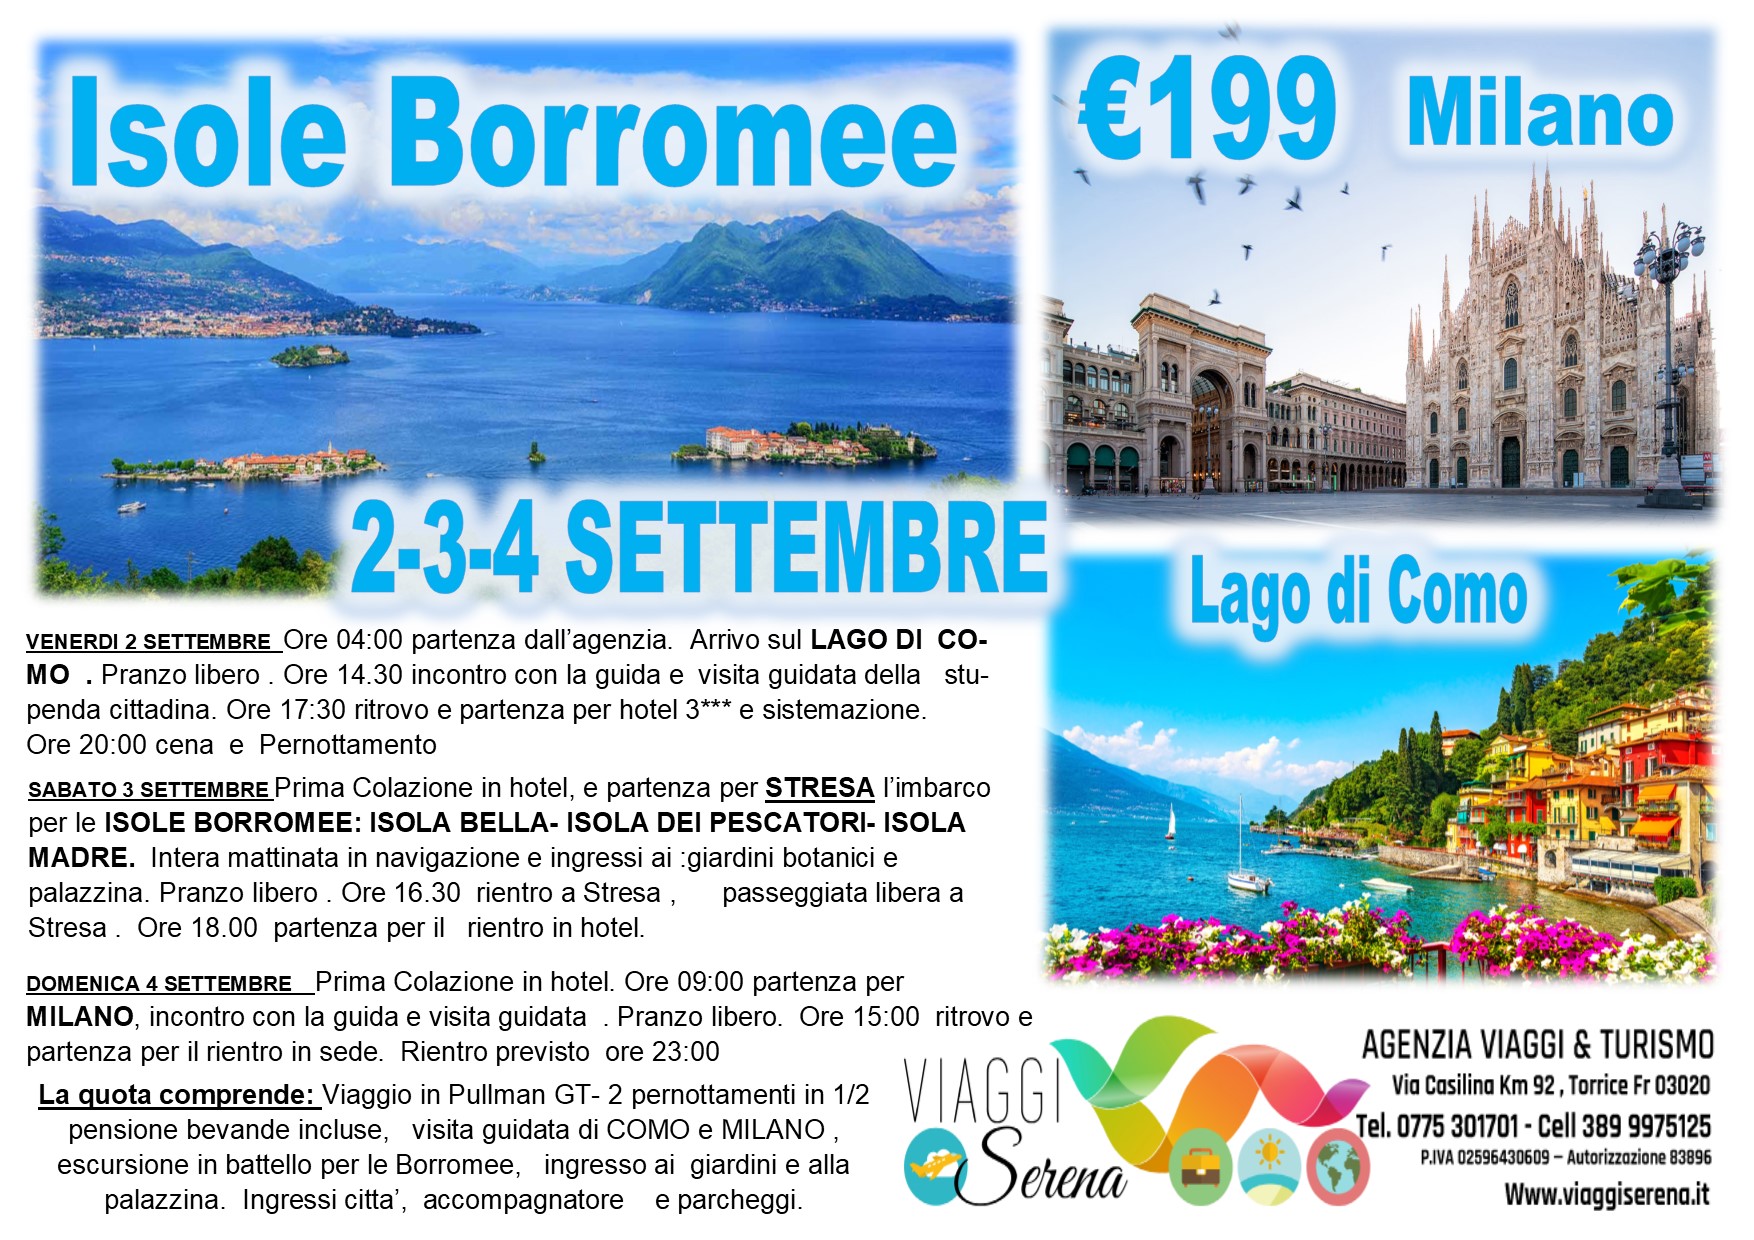 Viaggi di Gruppo: Isole Borromee, Lago di Como & Milano 2-3-4 Settembre €199,00